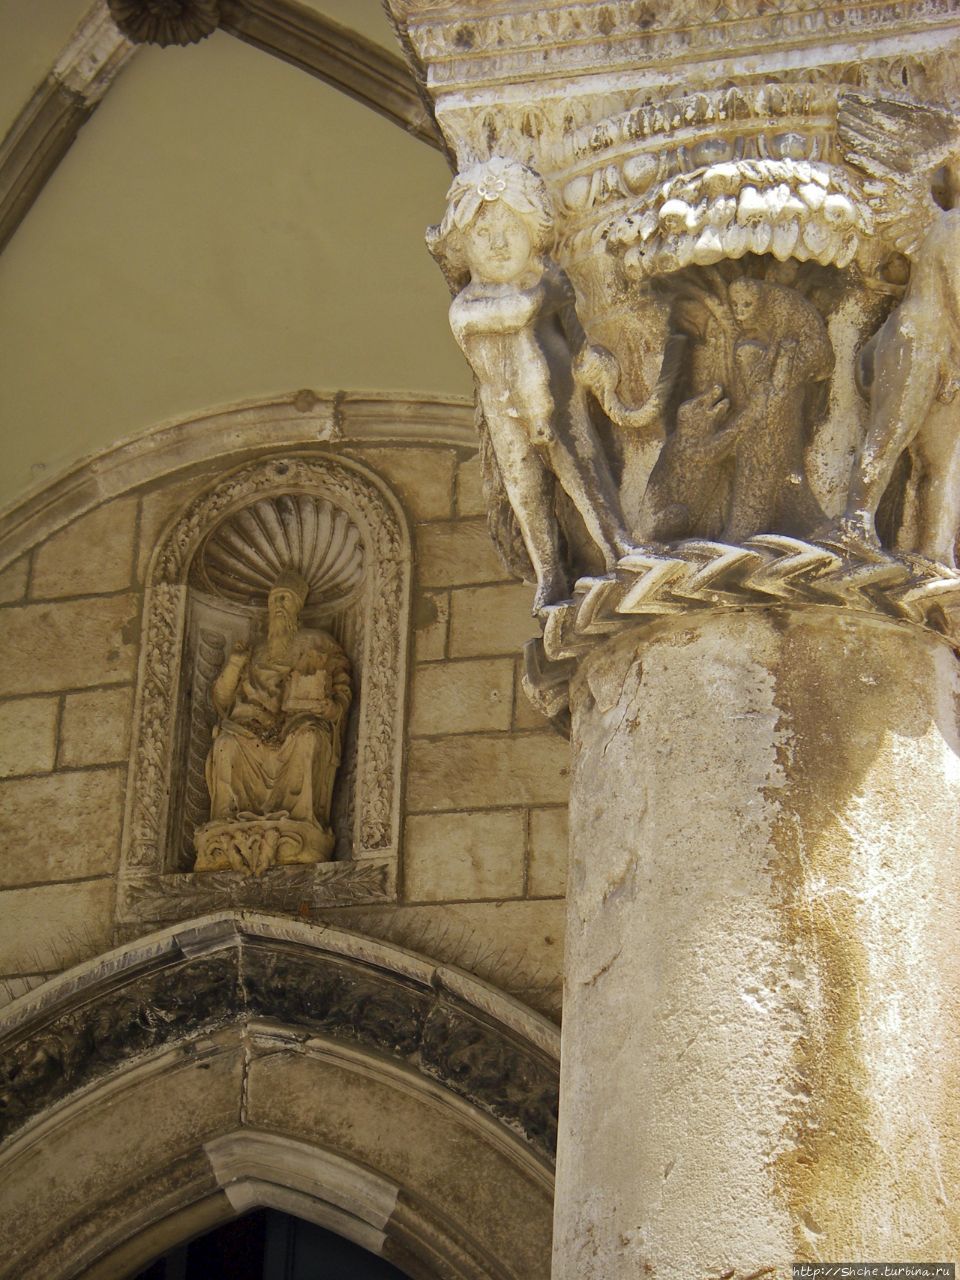 Опять покровитель св. Влах ( иногда пишут св. Власий) Дубровник, Хорватия